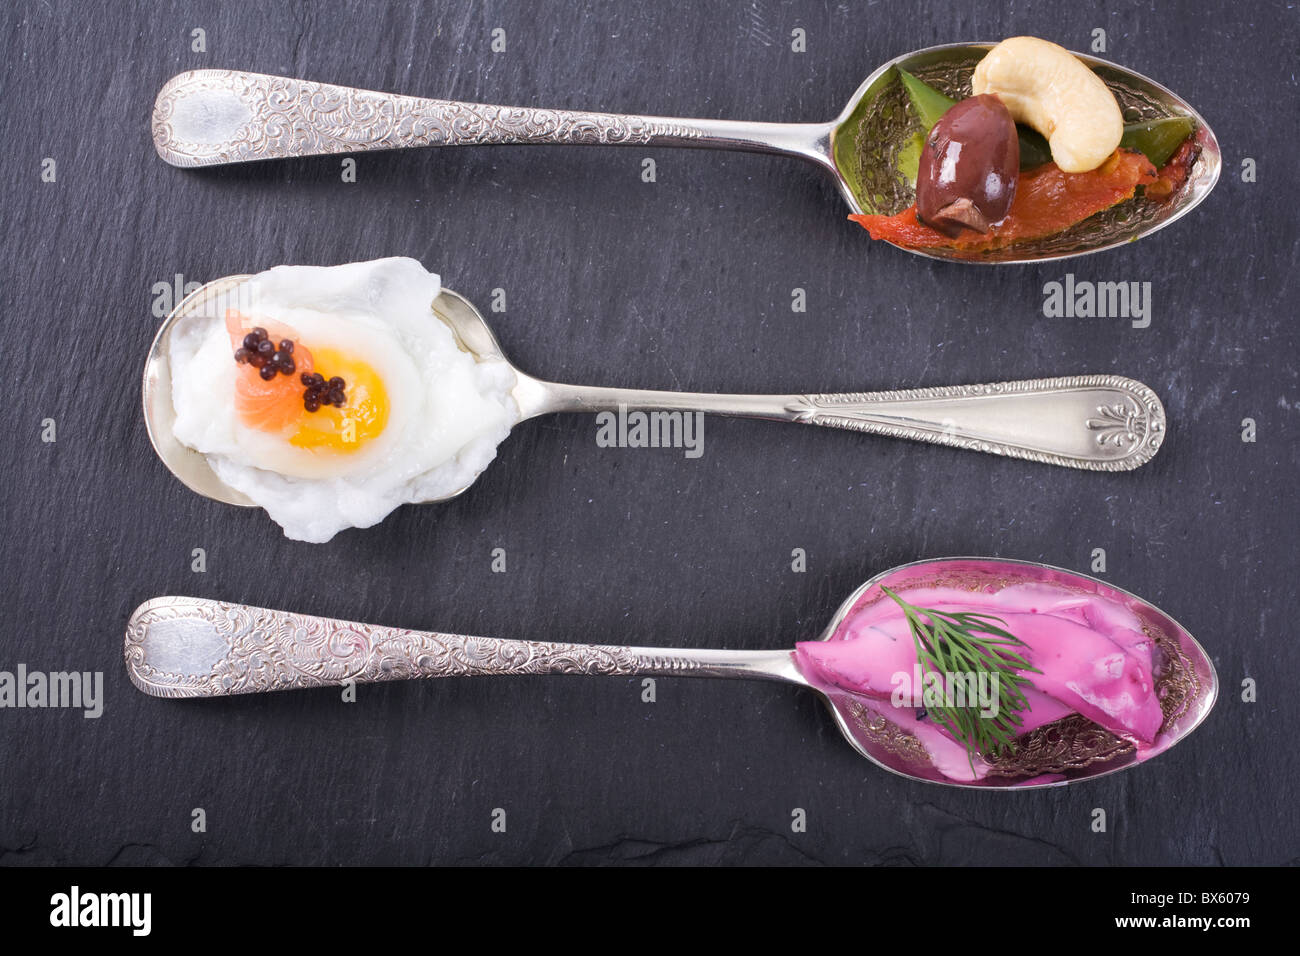 Una selezione di antipasti gourmet di argento cucchiai, servita su ardesia. Anacardi, insalata di caviale + uovo e barbabietole + rafano Foto Stock